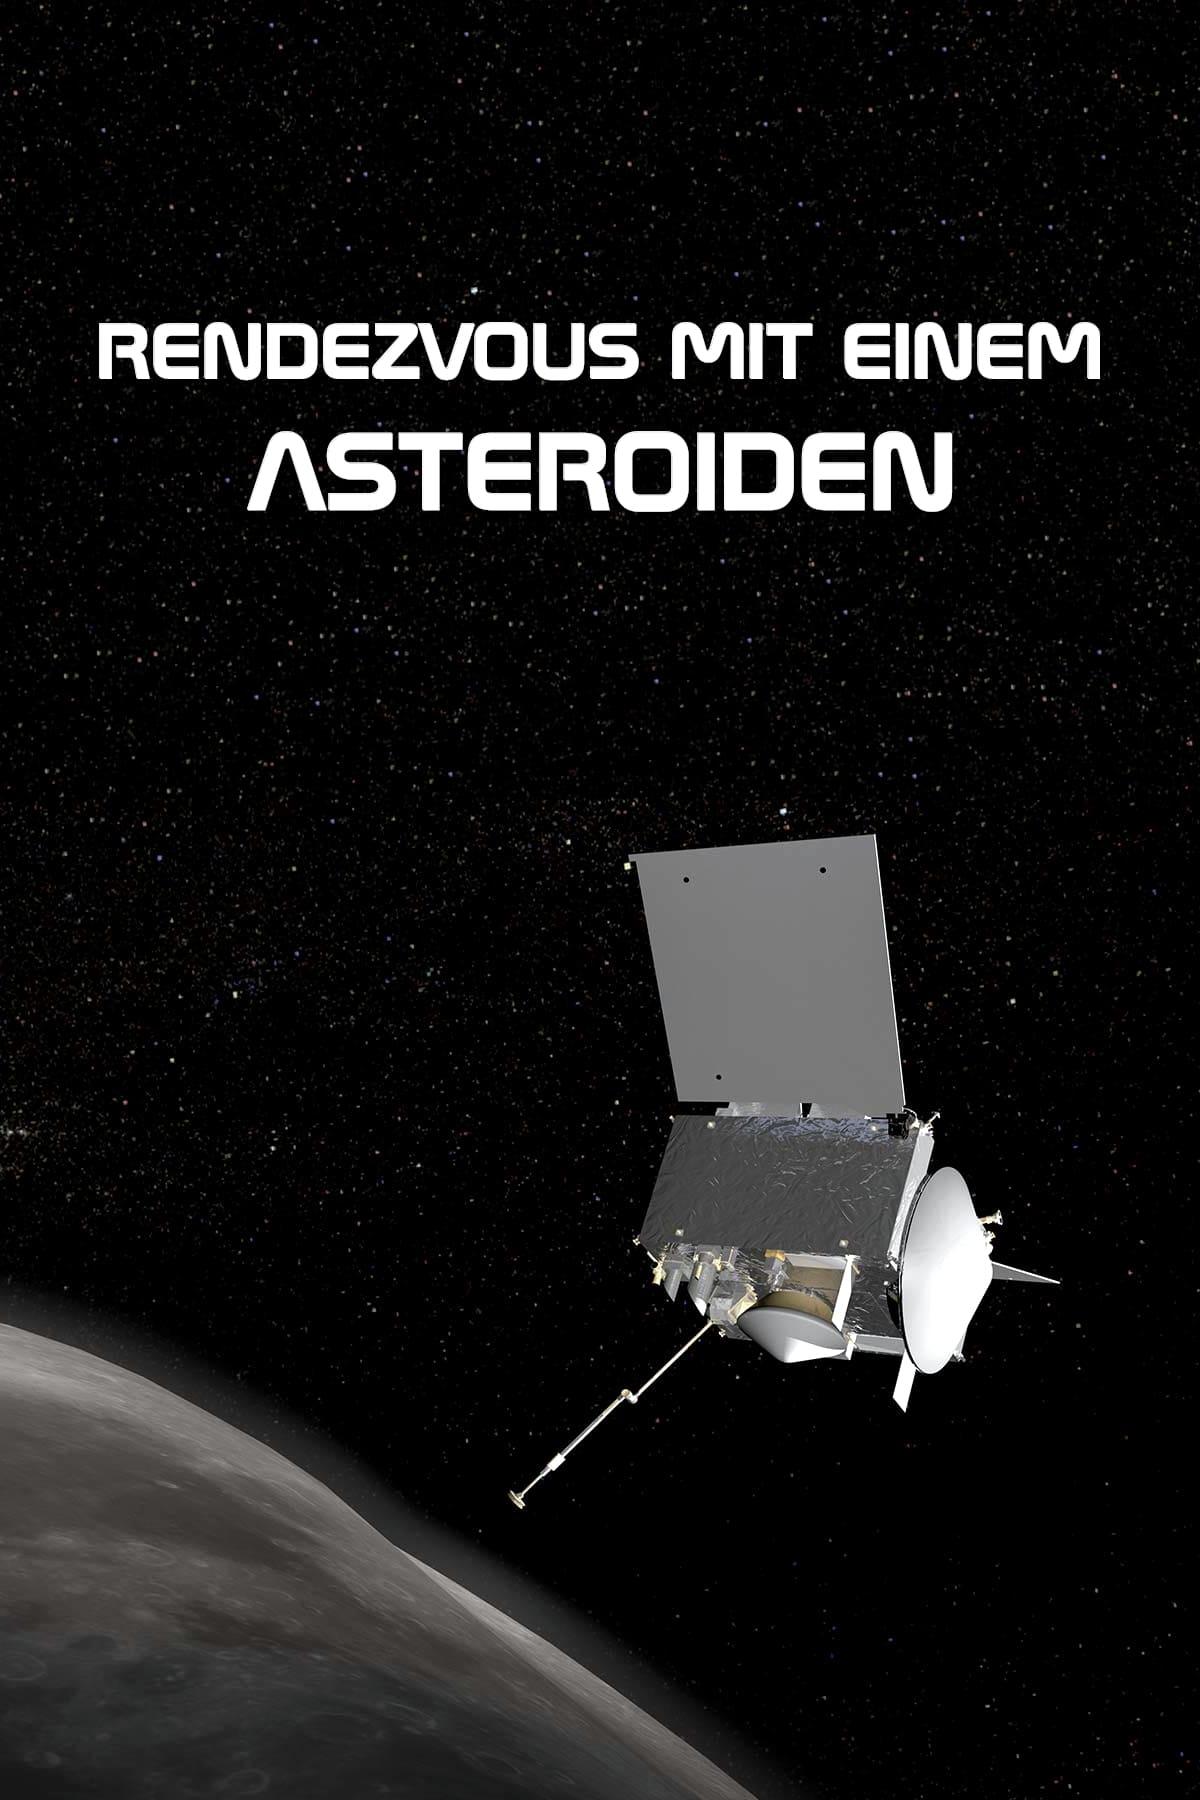 Rendezvous mit einem Asteroiden poster